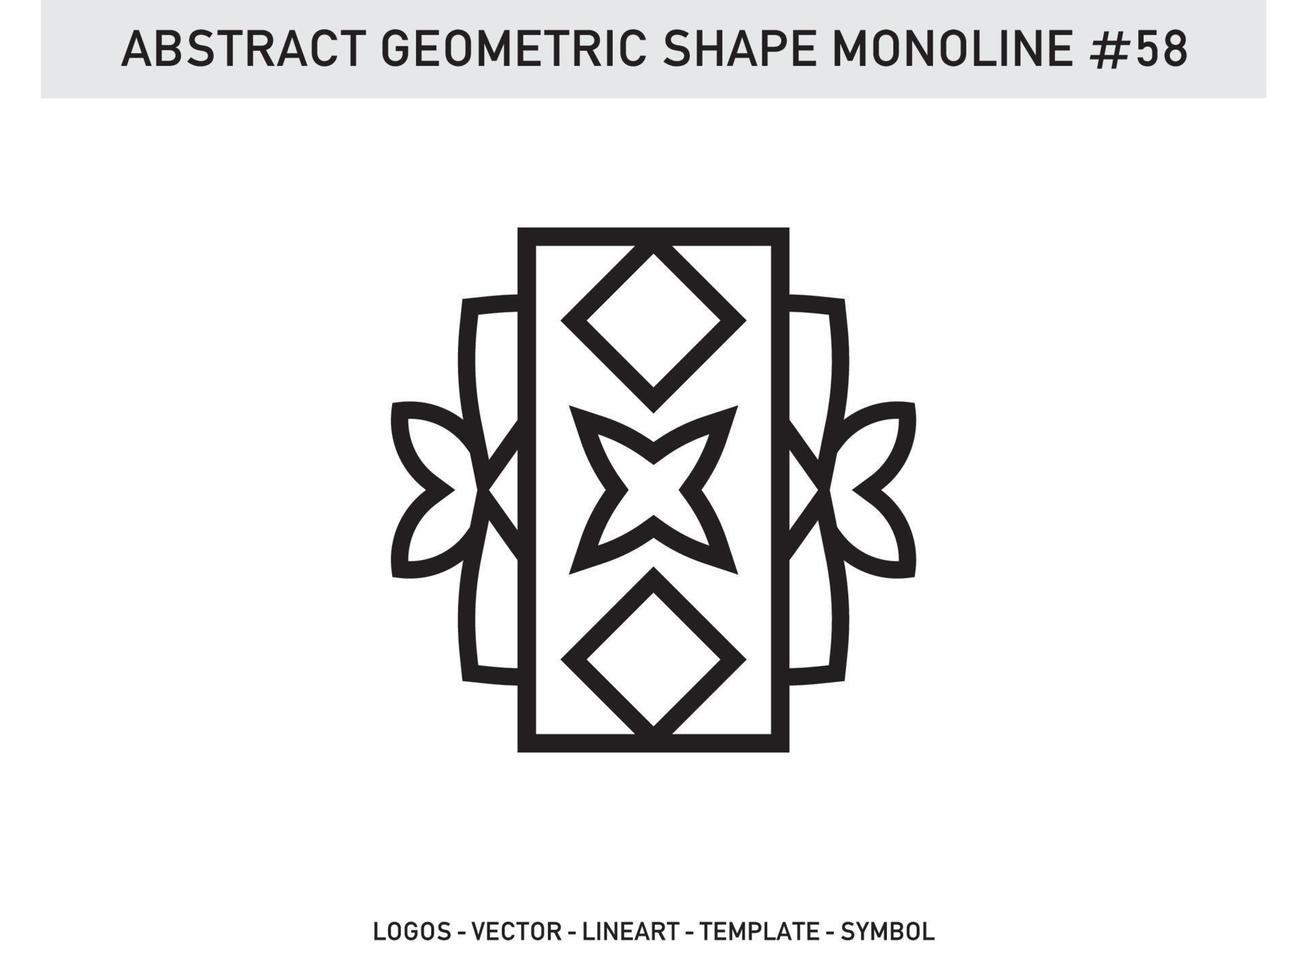 geometrische monoline vorm abstract gratis vector